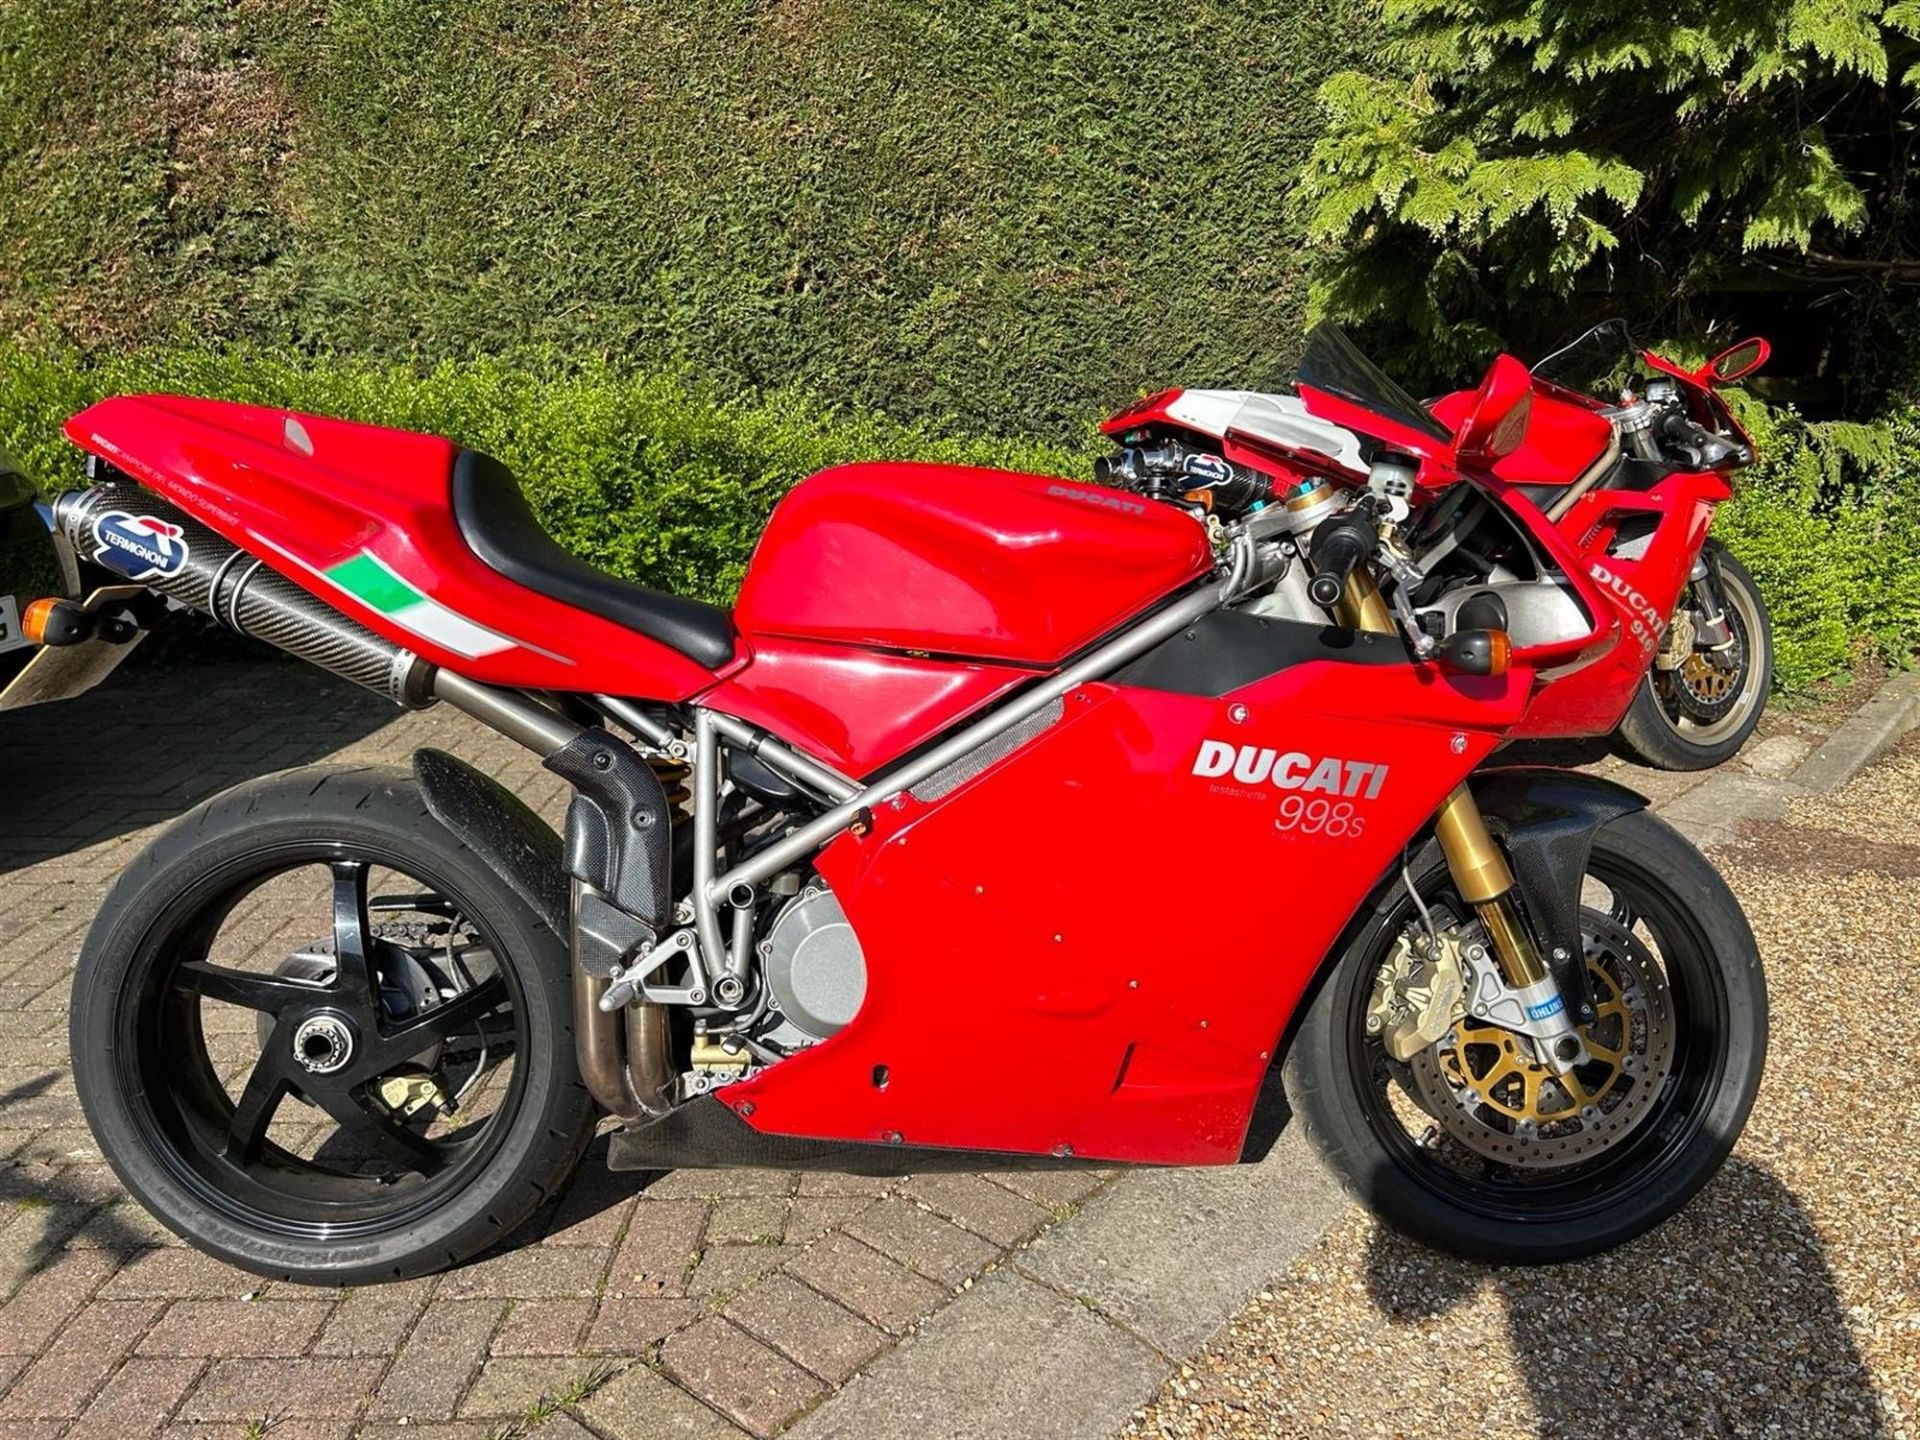 2004 Ducati 998S Final Edition Monoposto 998cc - Image 4 of 7